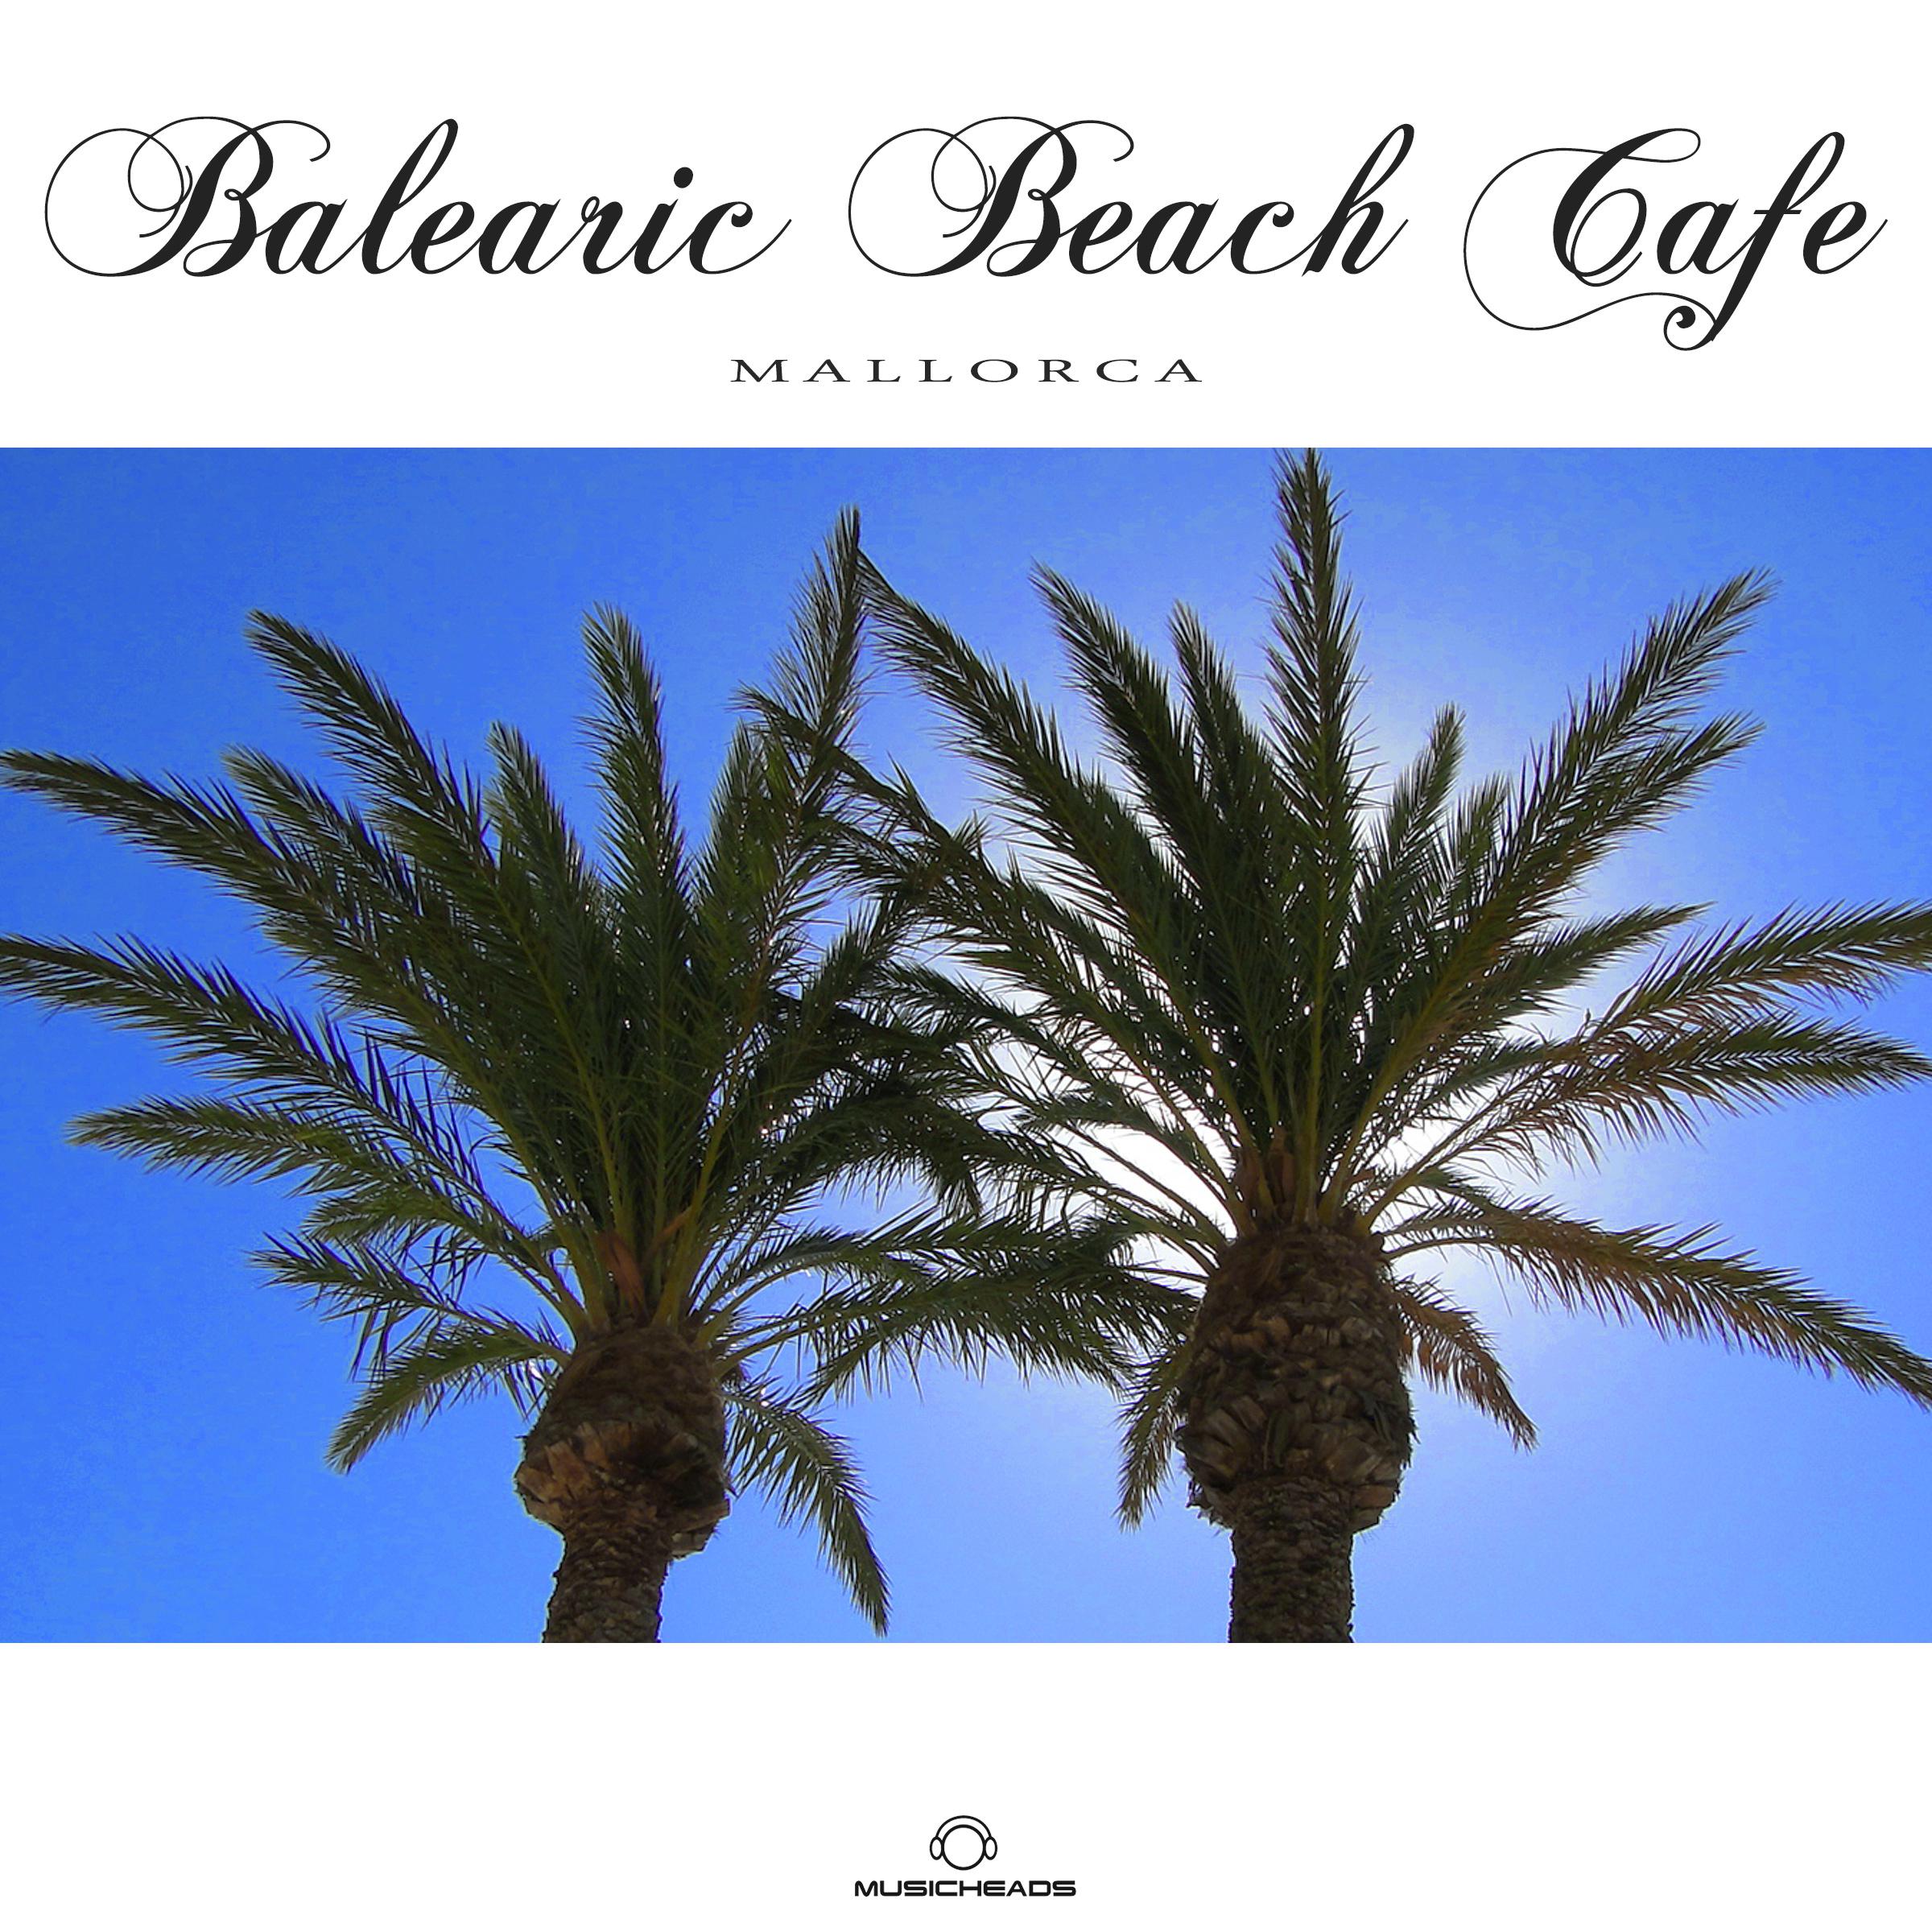 Balearic Beach Cafe - Mallorca